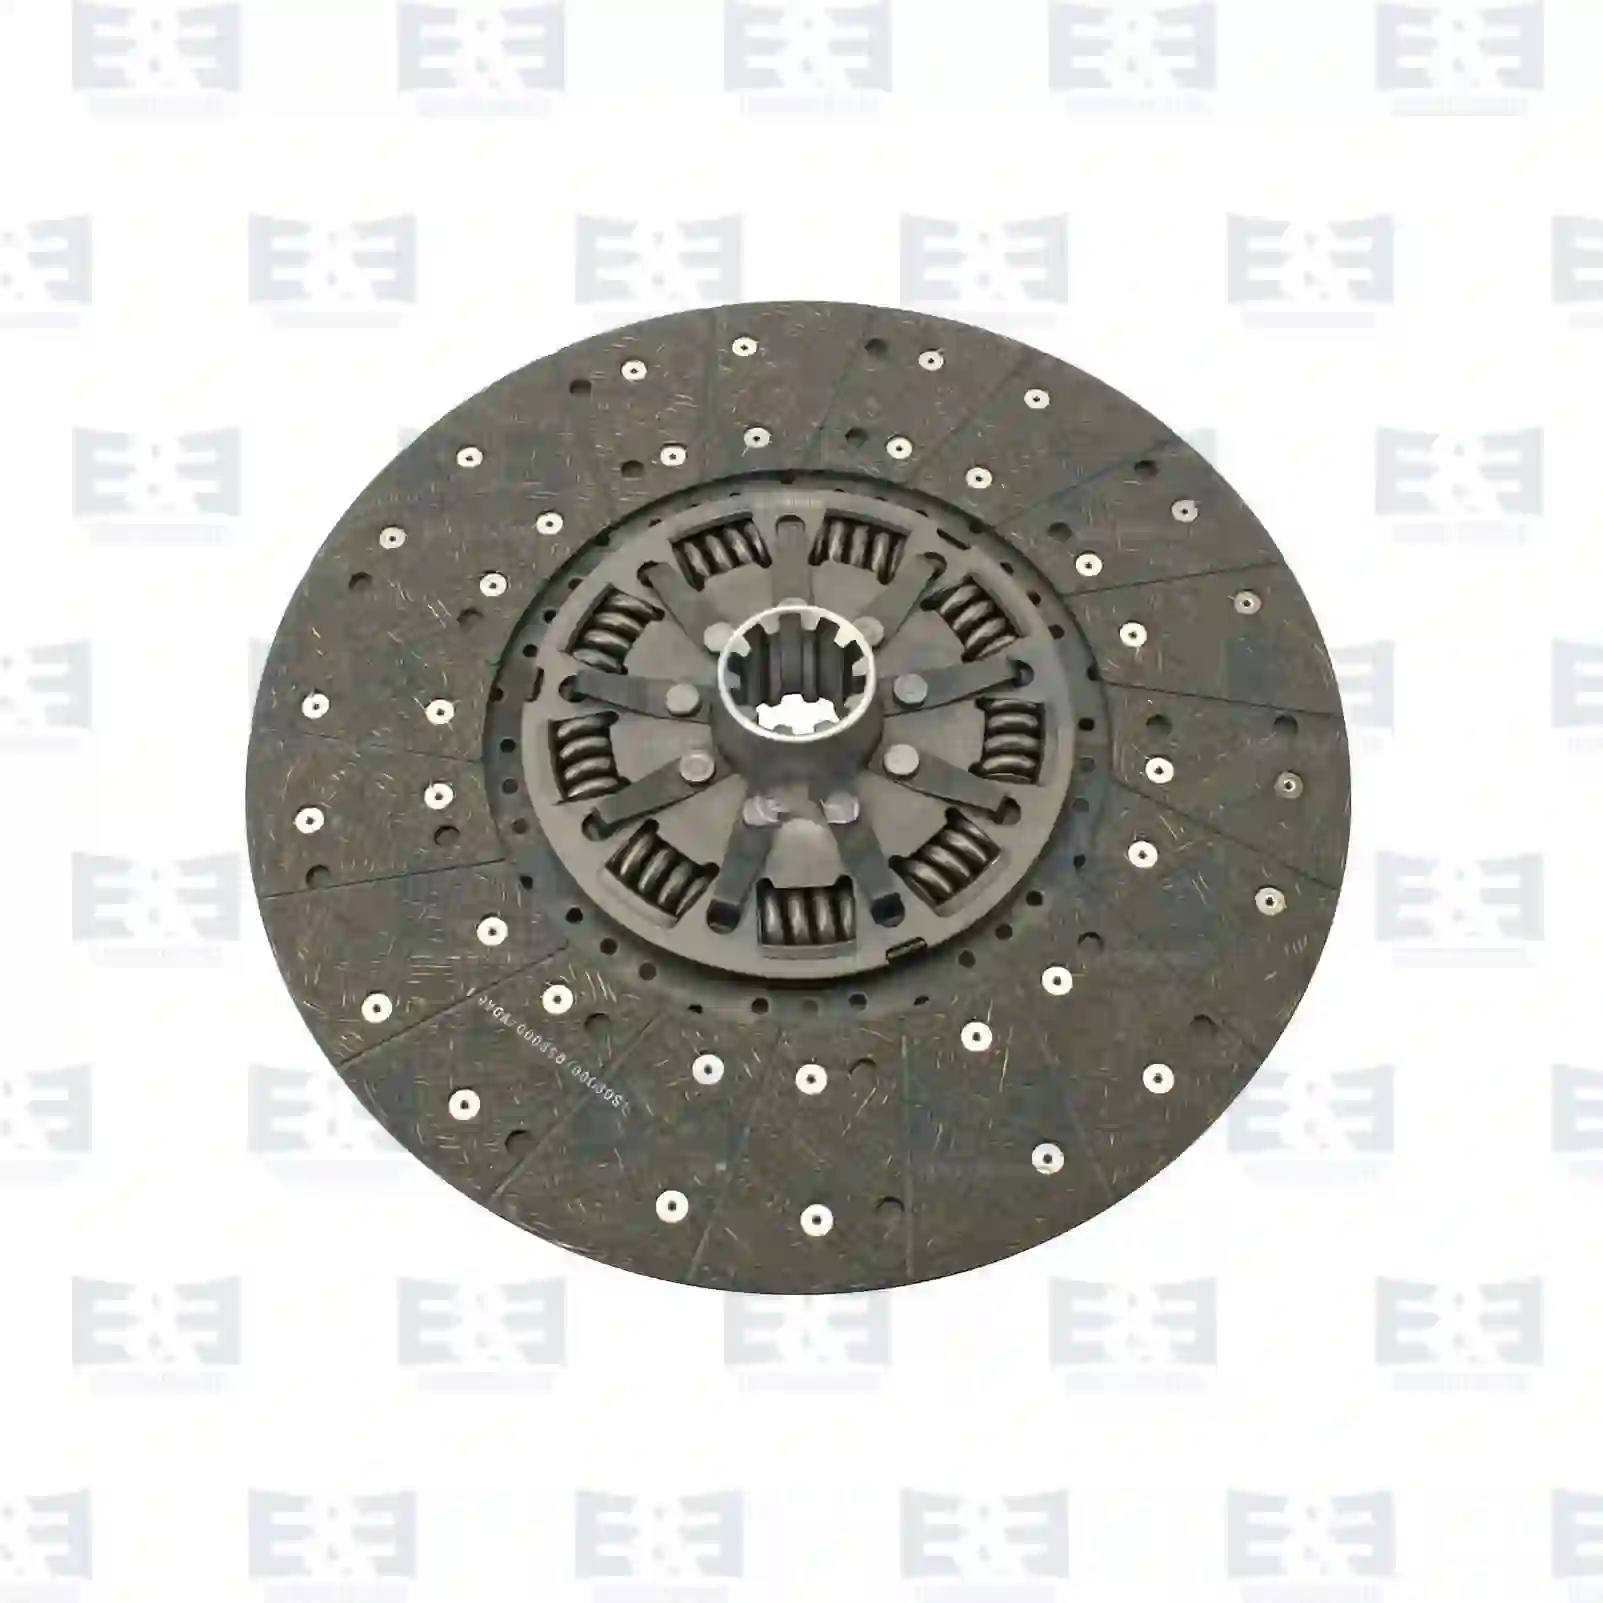 Clutch disc, 2E2288860, 1527519, 1527521, 1655677, 1655678, 1878004456, 8112106, 8112107, 8112149, 8112159, 8115149, 8115159, 8118149, 8118159 ||  2E2288860 E&E Truck Spare Parts | Truck Spare Parts, Auotomotive Spare Parts Clutch disc, 2E2288860, 1527519, 1527521, 1655677, 1655678, 1878004456, 8112106, 8112107, 8112149, 8112159, 8115149, 8115159, 8118149, 8118159 ||  2E2288860 E&E Truck Spare Parts | Truck Spare Parts, Auotomotive Spare Parts